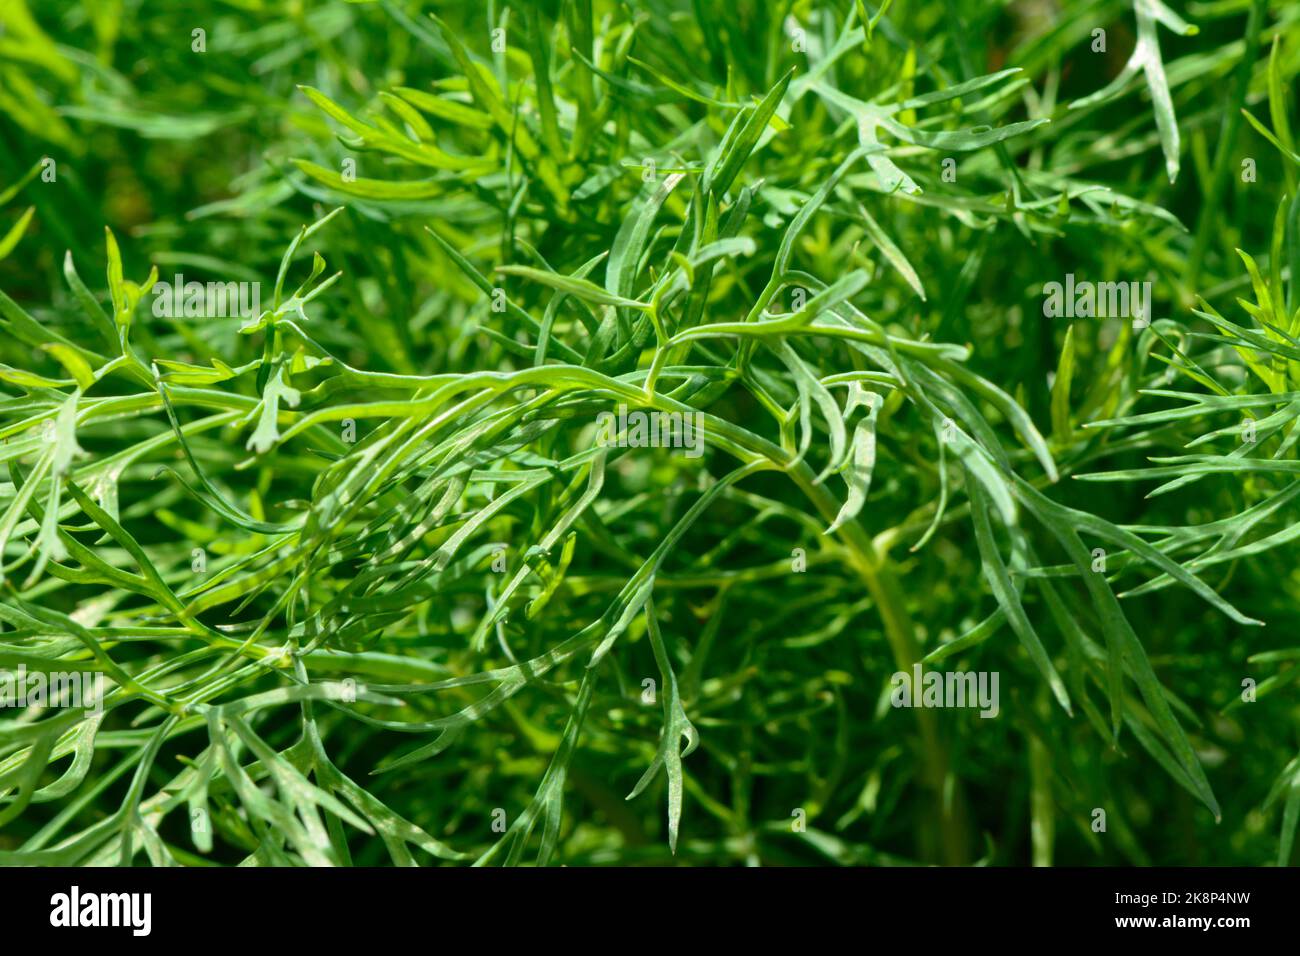 Nahaufnahme der frischen grünen Dillblätter (Anethum graveolens) - ein jährlich aromatisches kulinarisches Kraut. Auch Dillunkraut und Dillunkraut genannt. Stockfoto